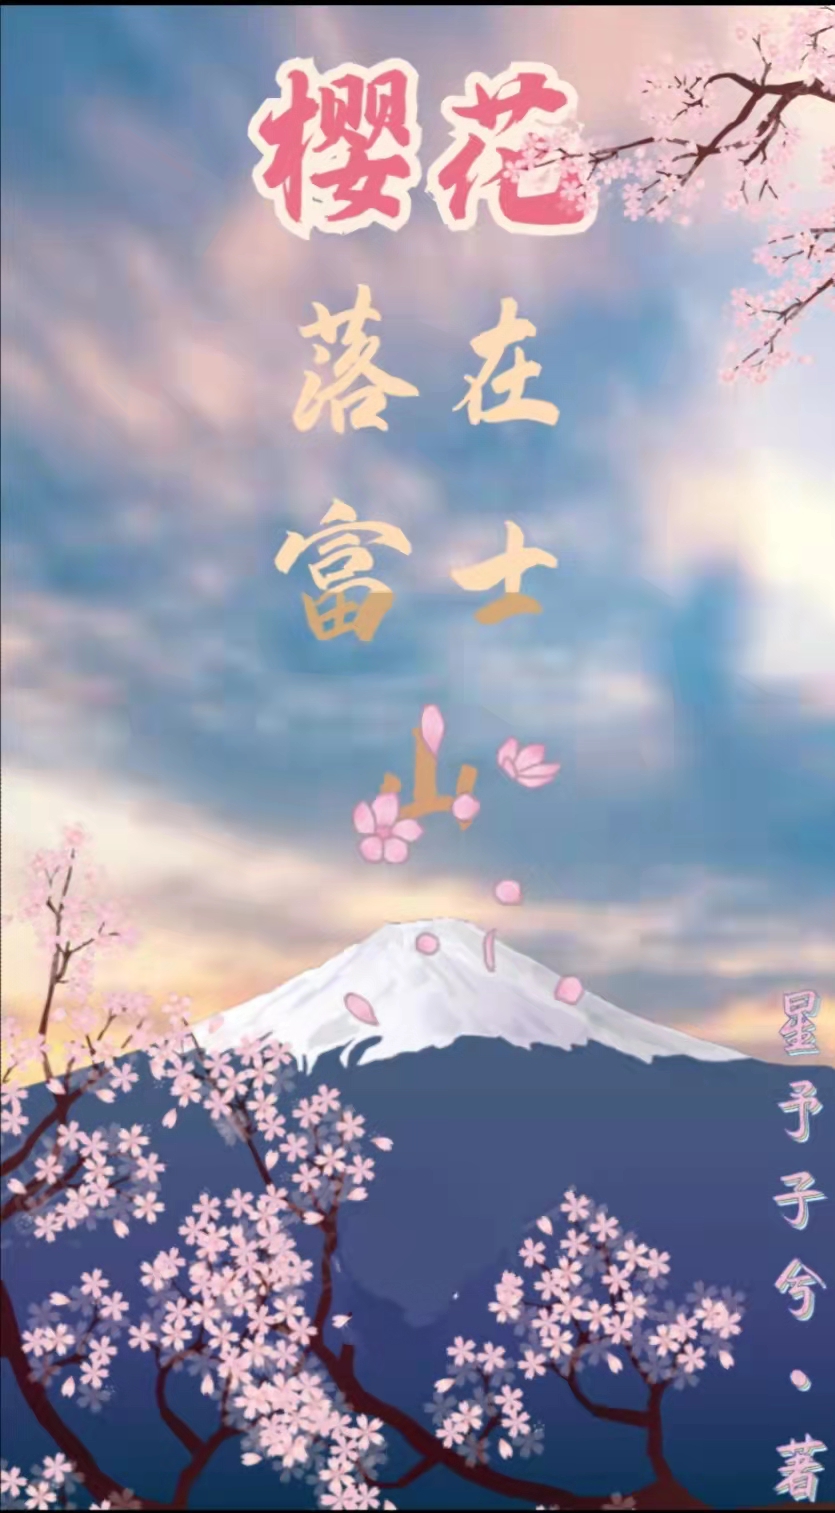 樱花落在富士山